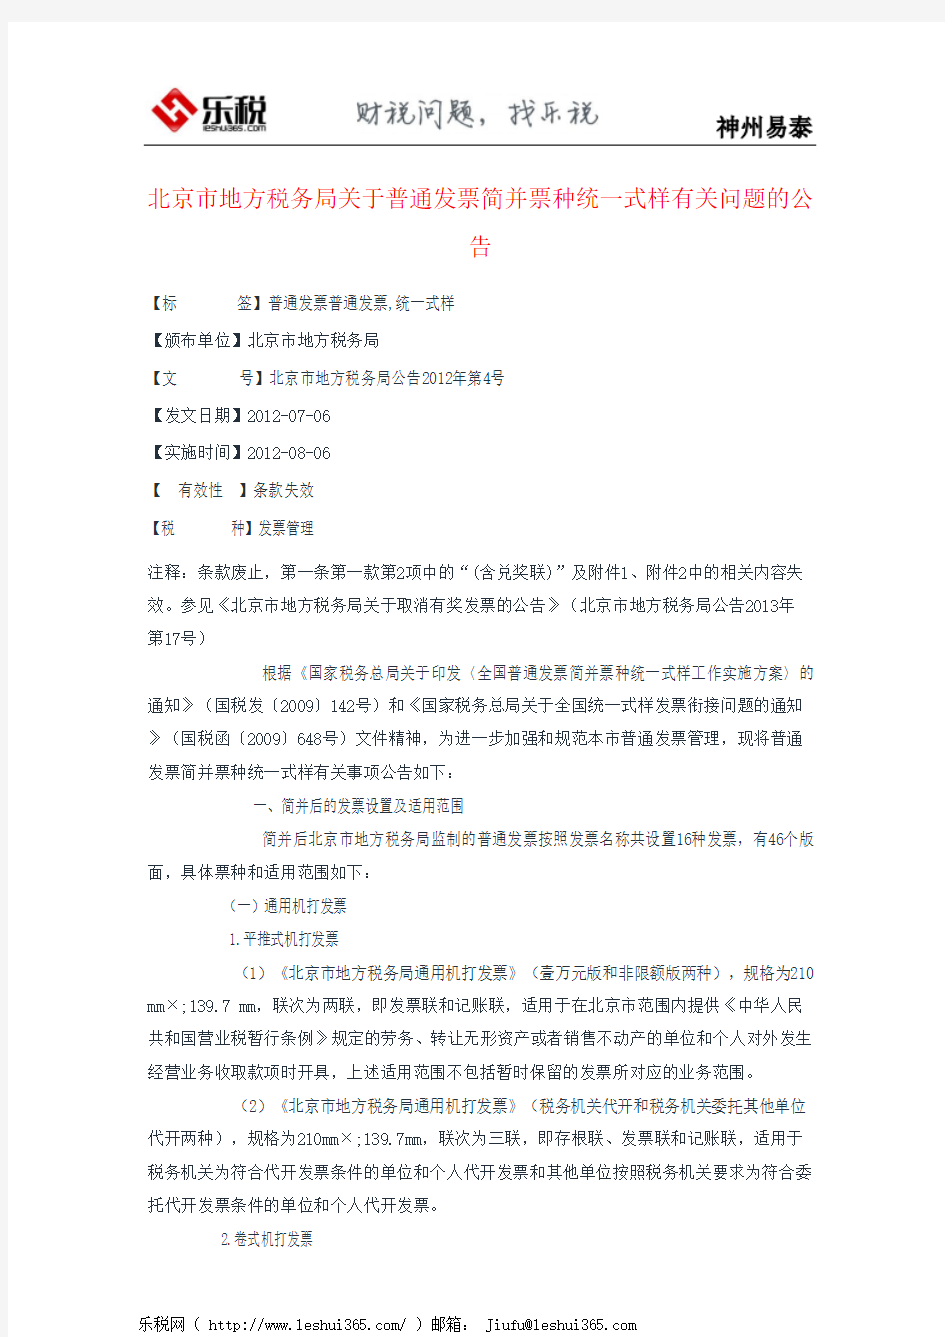 北京市地方税务局关于普通发票简并票种统一式样有关问题的公告